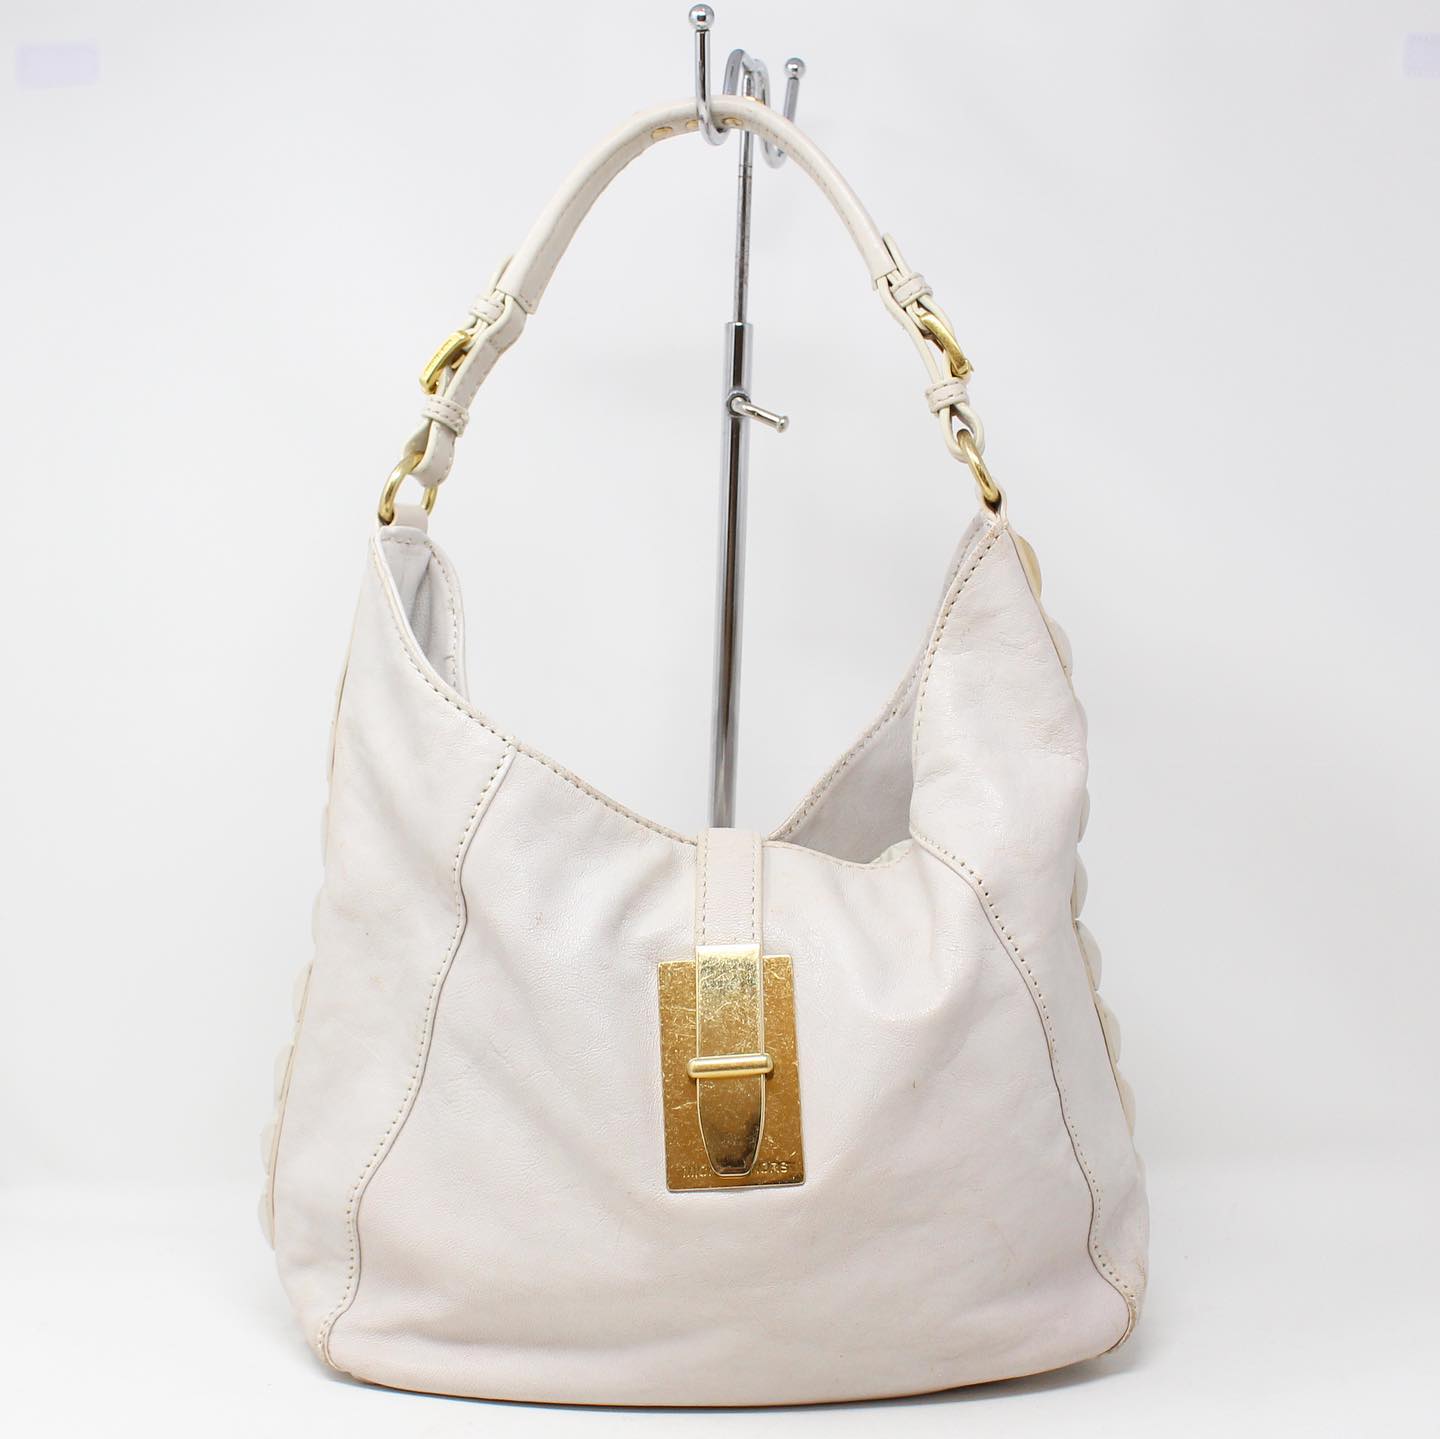 MICHAEL KORS White Leather Handbag #19045 – ALL YOUR BLISS